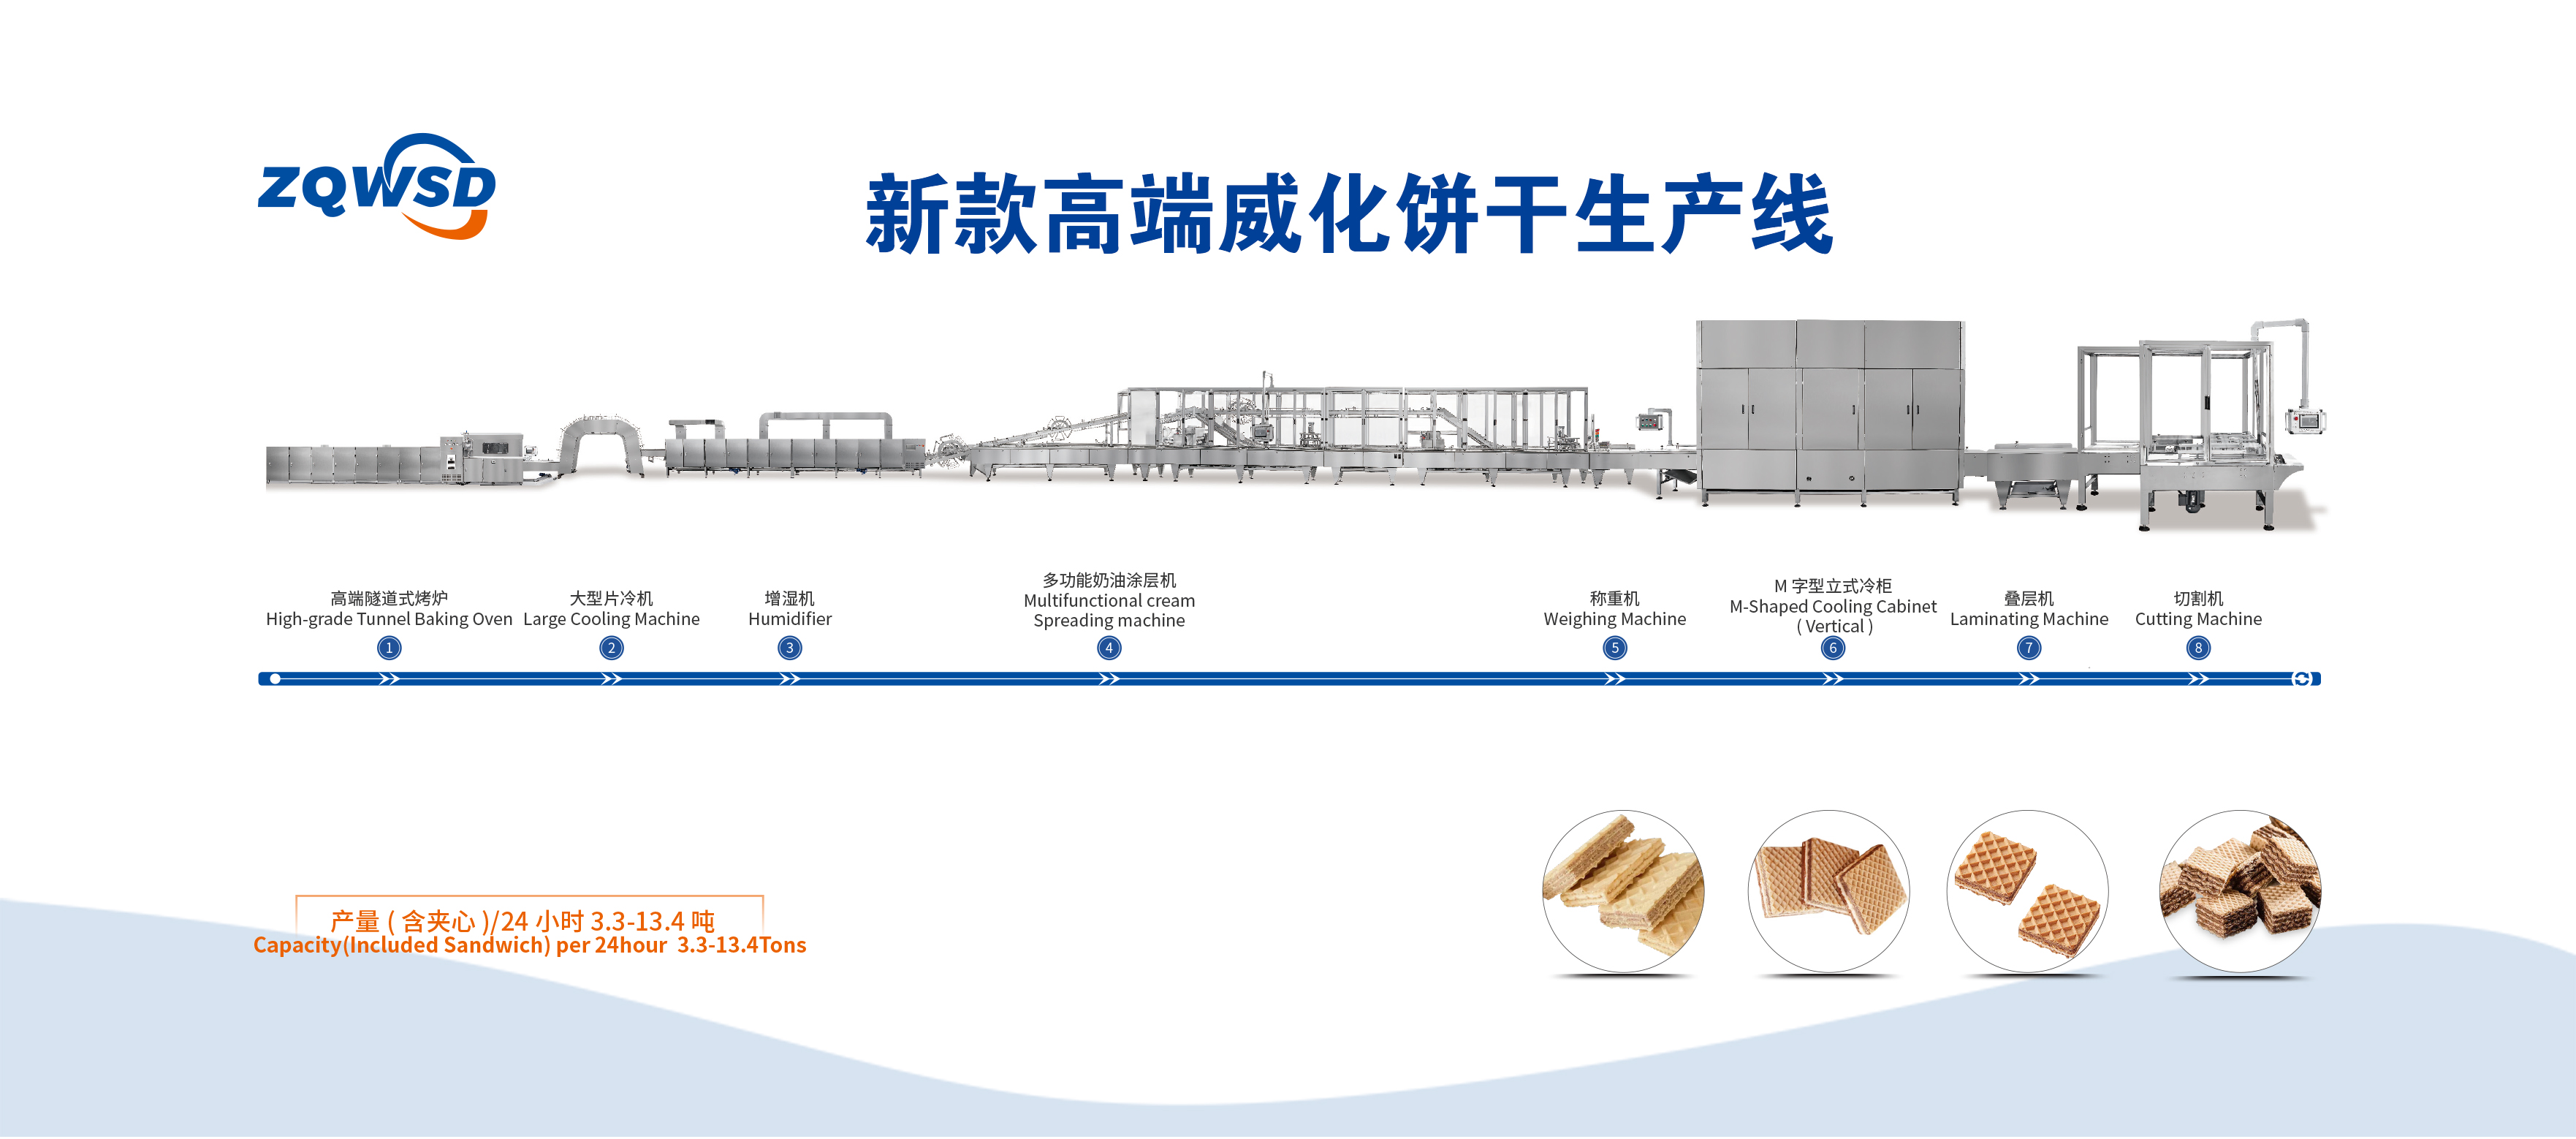 广州新款高端威化饼干生产线